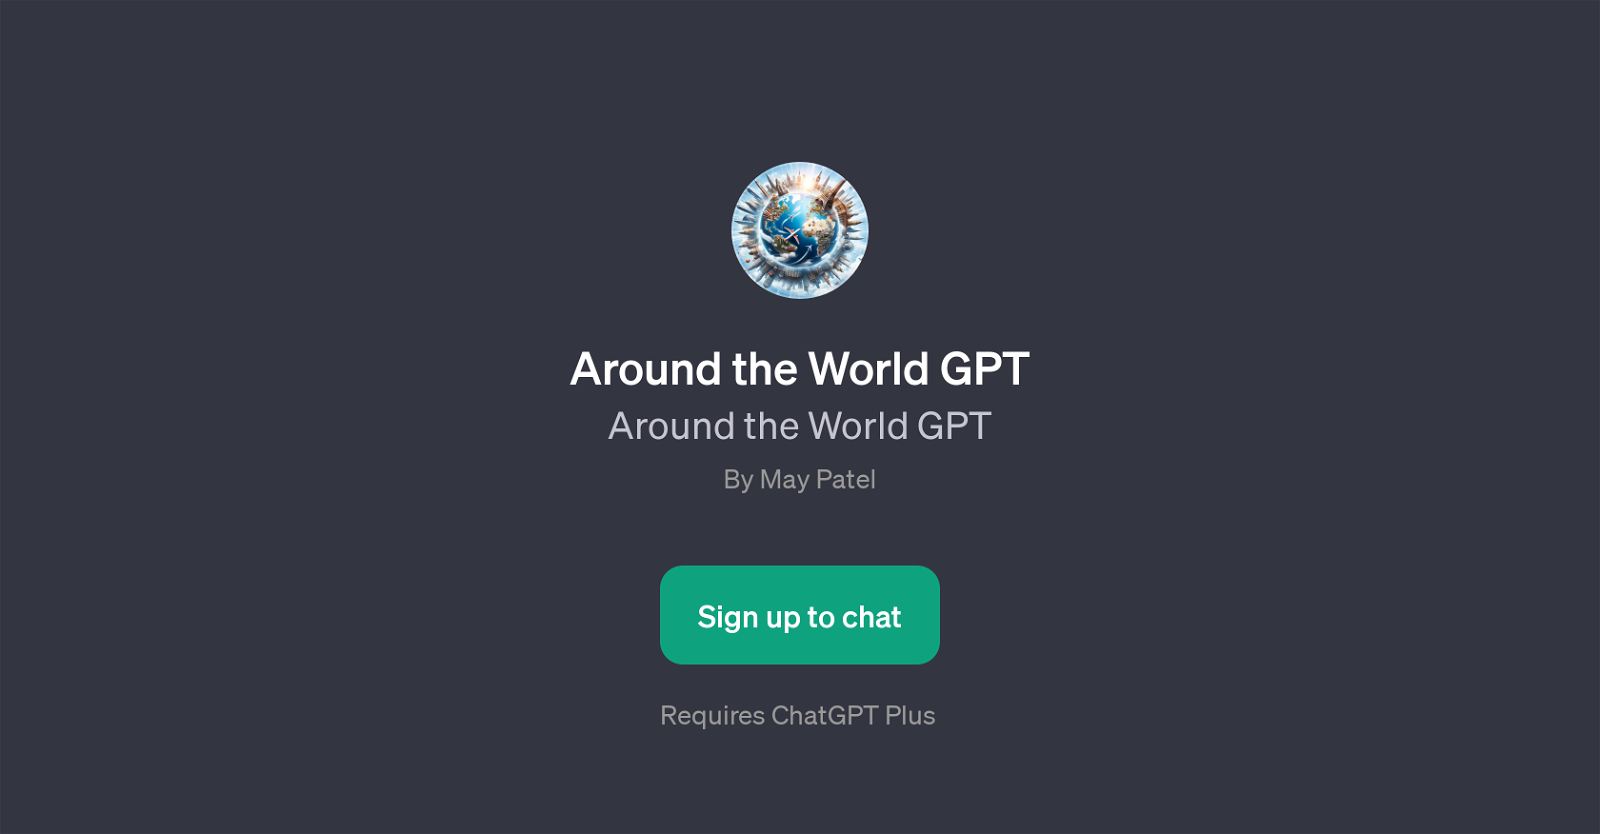 Around the World GPT website